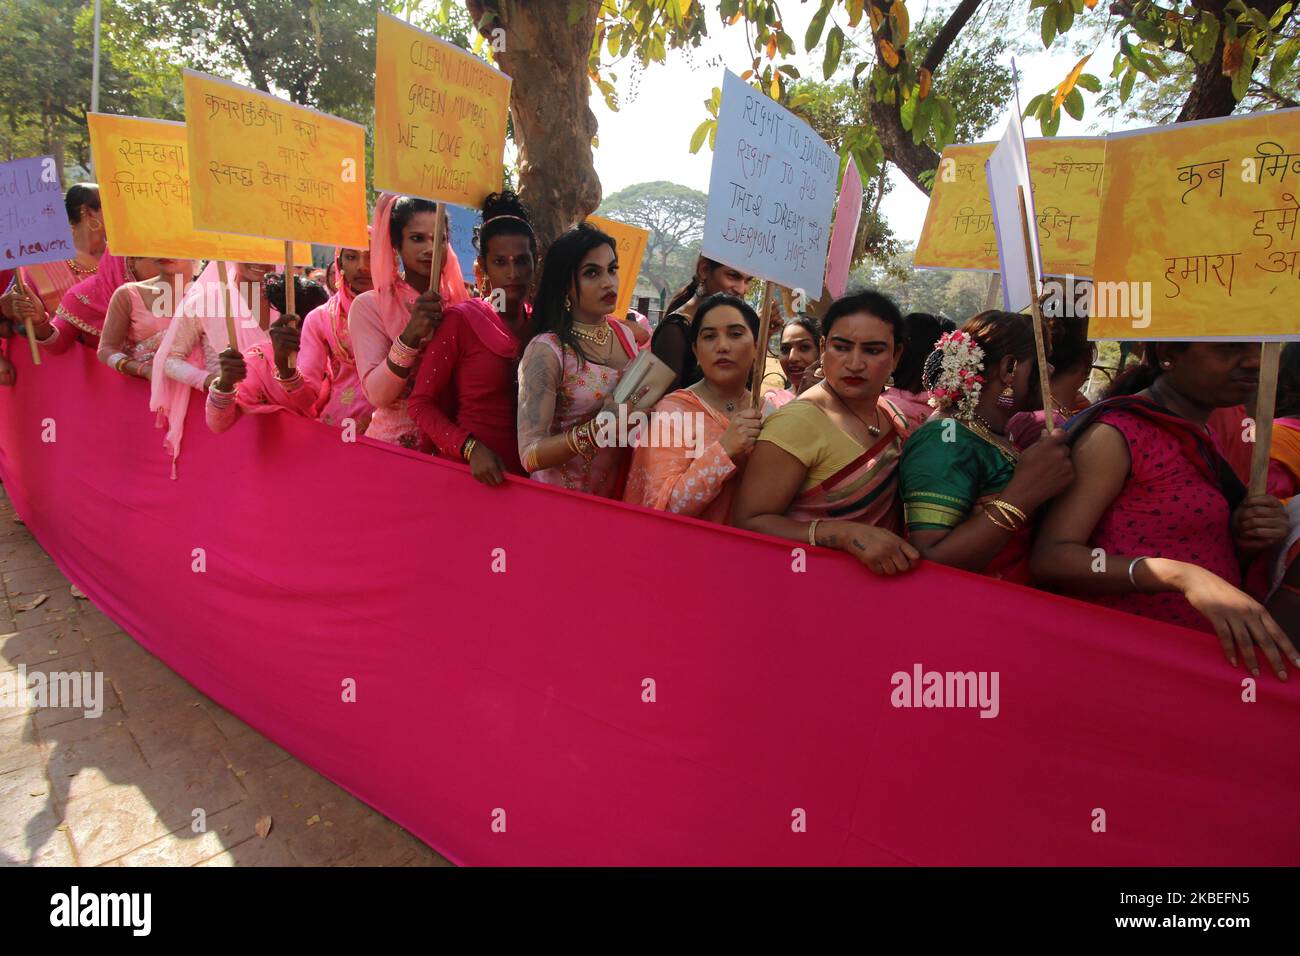 Les militants transgenres tiennent des pancartes lors d'un rassemblement à Mumbai, en Inde, le 13 janvier 2020. Le sixième rassemblement rose organisé lundi par une ONG, Kinnar Maa Trust, contre le gouvernement de l'État qui réclame diverses demandes. (Photo par Himanshu Bhatt/NurPhoto) Banque D'Images